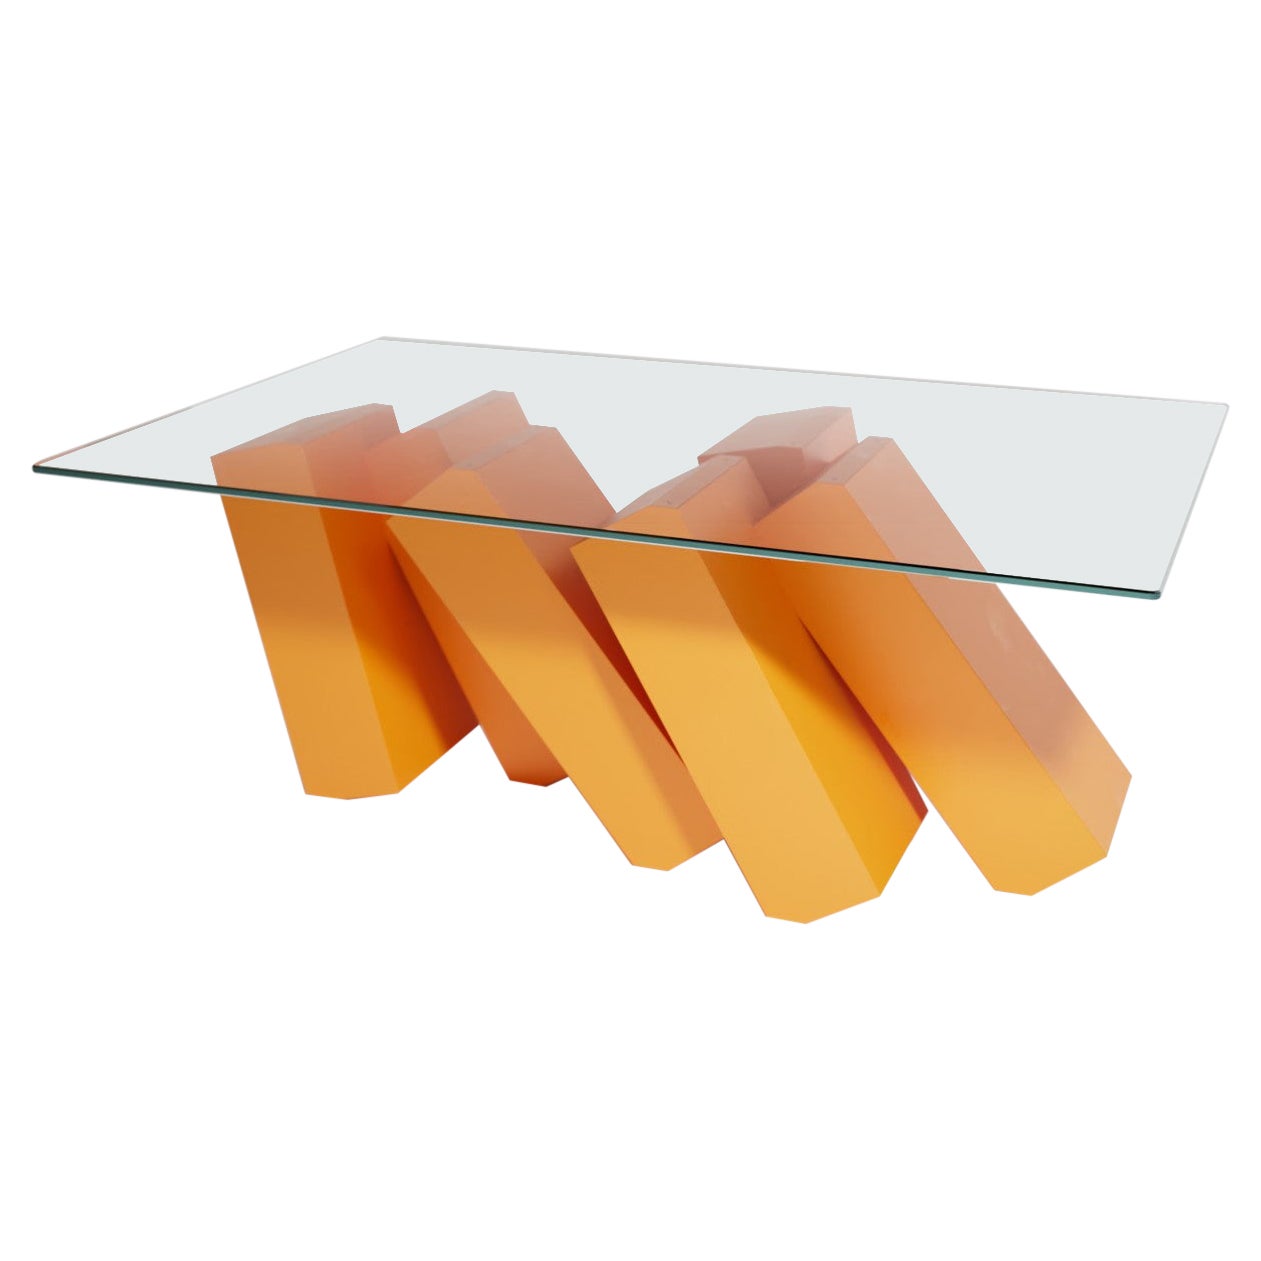 Table basse rectangulaire futuriste en revêtement en poudre orange